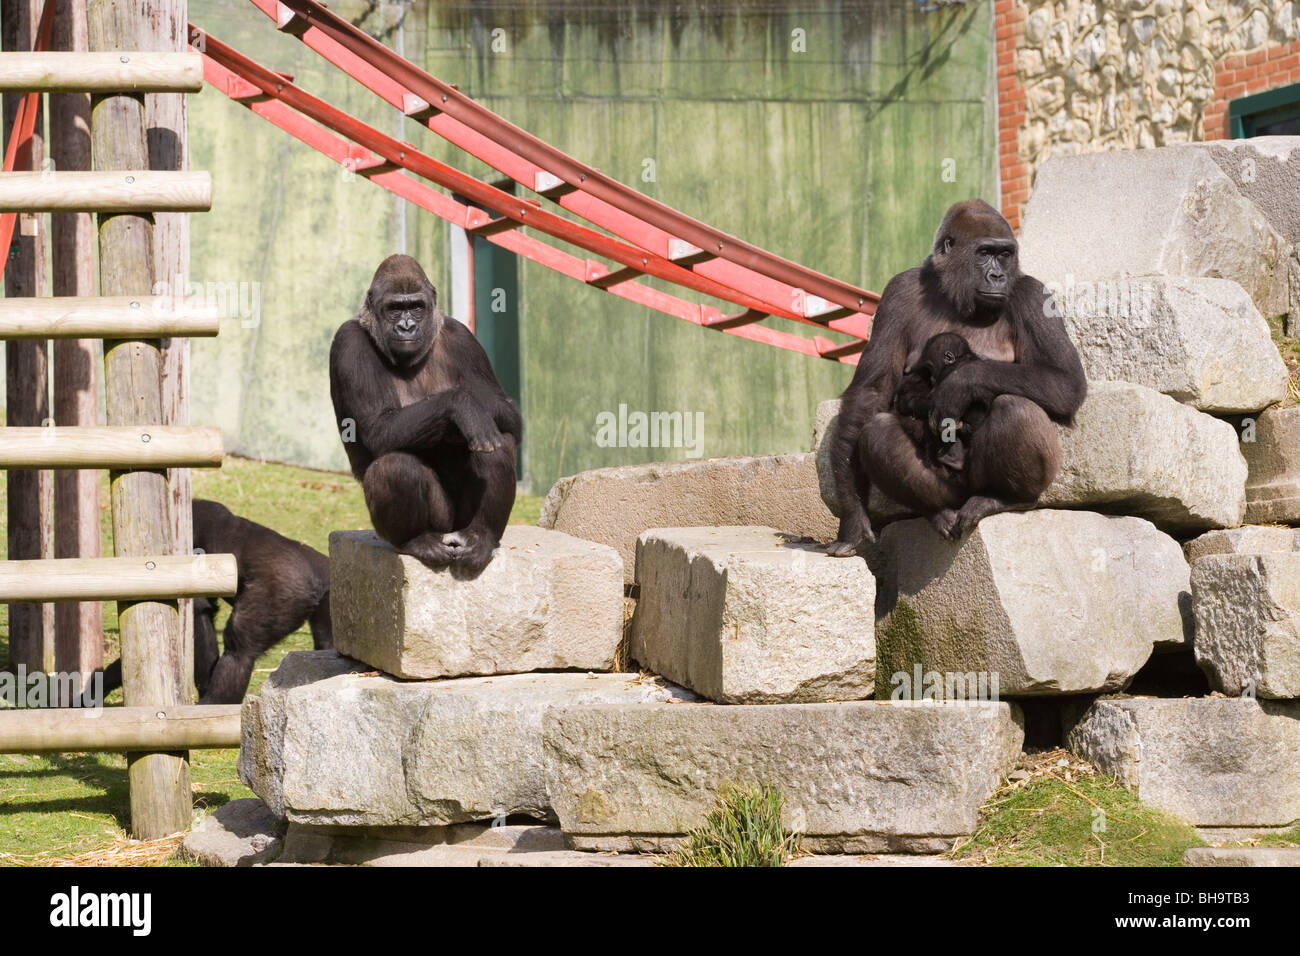 El Gorila Occidental (Gorilla gorilla). Los animales de zoológico medio "mueble" objetos de "enriquecimiento ambiental". Foto de stock